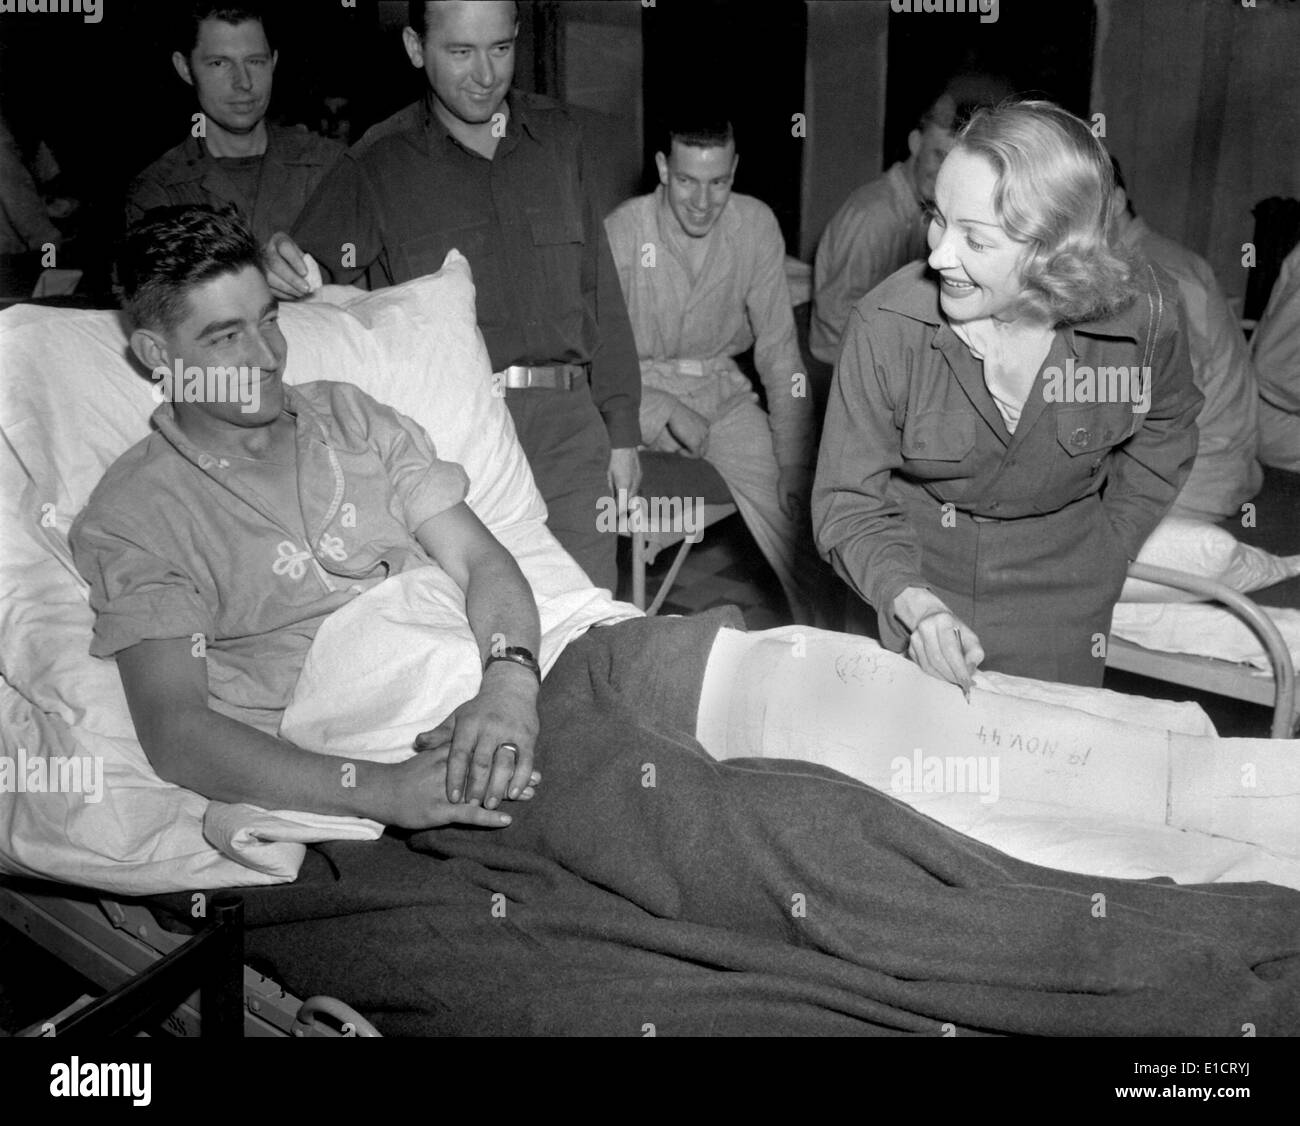 Marlene Dietrich, des autographes le cast sur la jambe de 'Tec' 4 Earl McFarland de Cavider, Texas. Dans un hôpital américain en Belgique, Banque D'Images